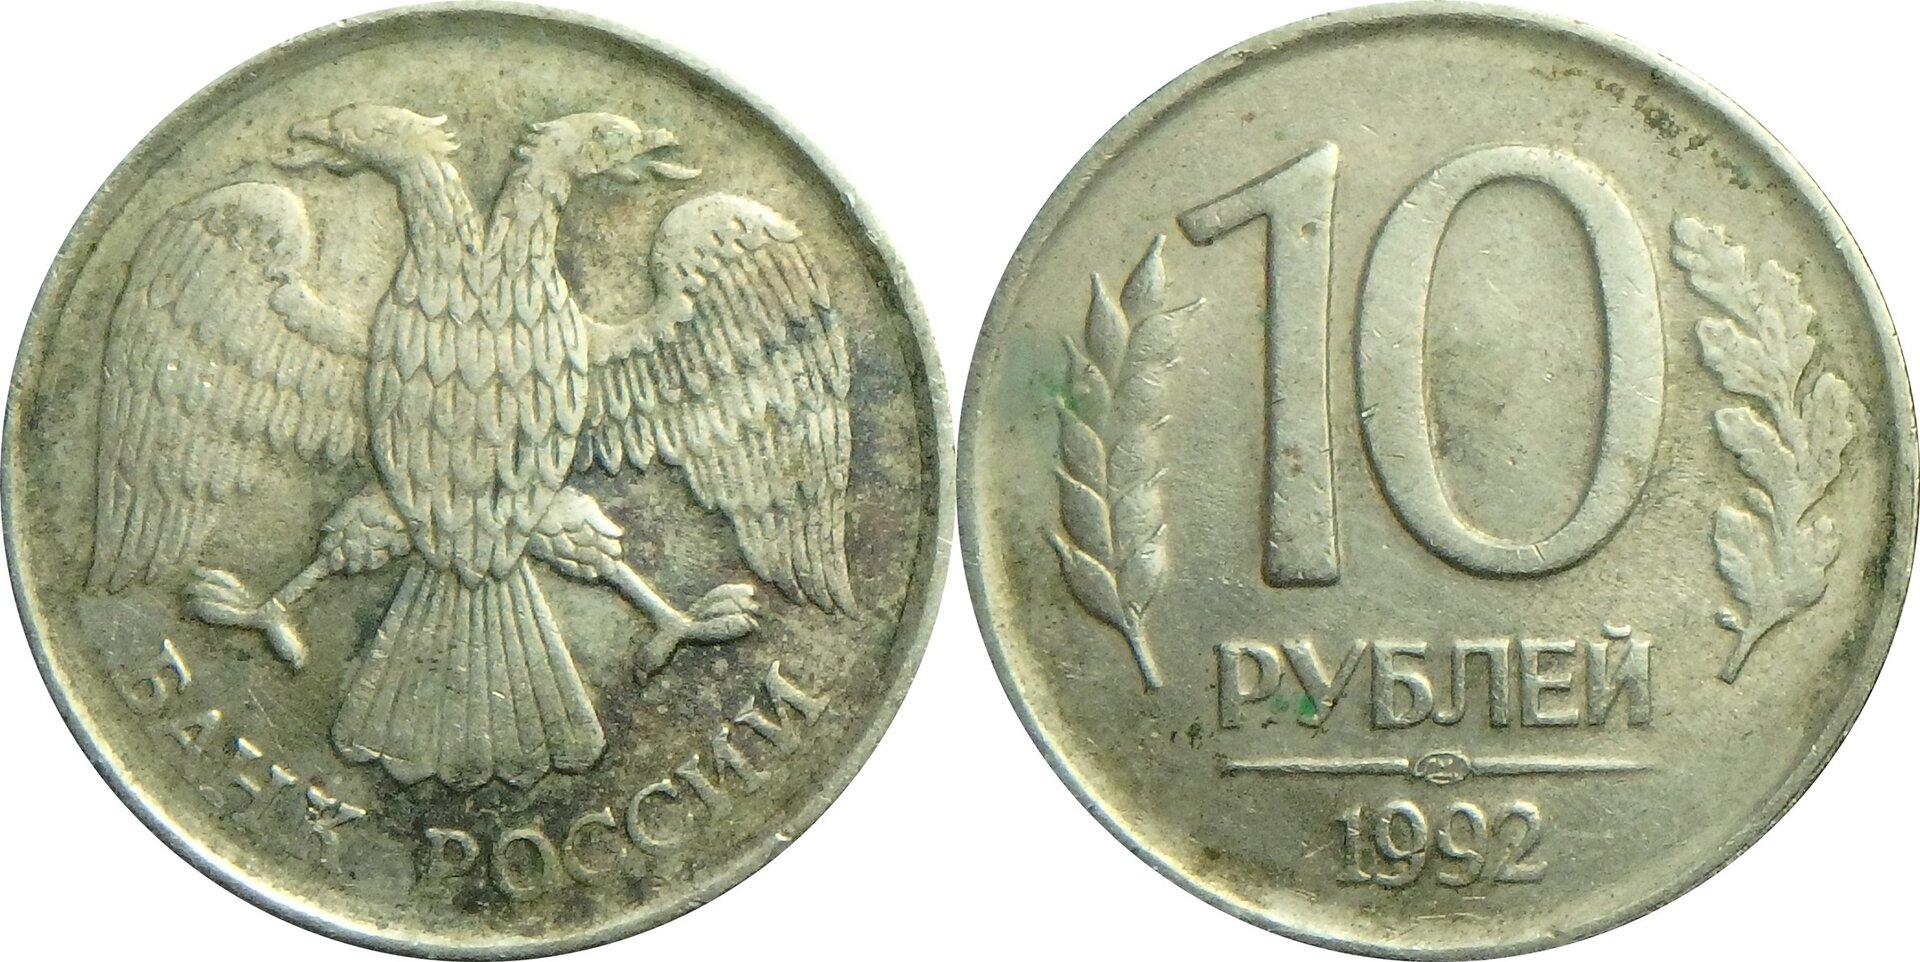 1992 RU 10 r.jpg